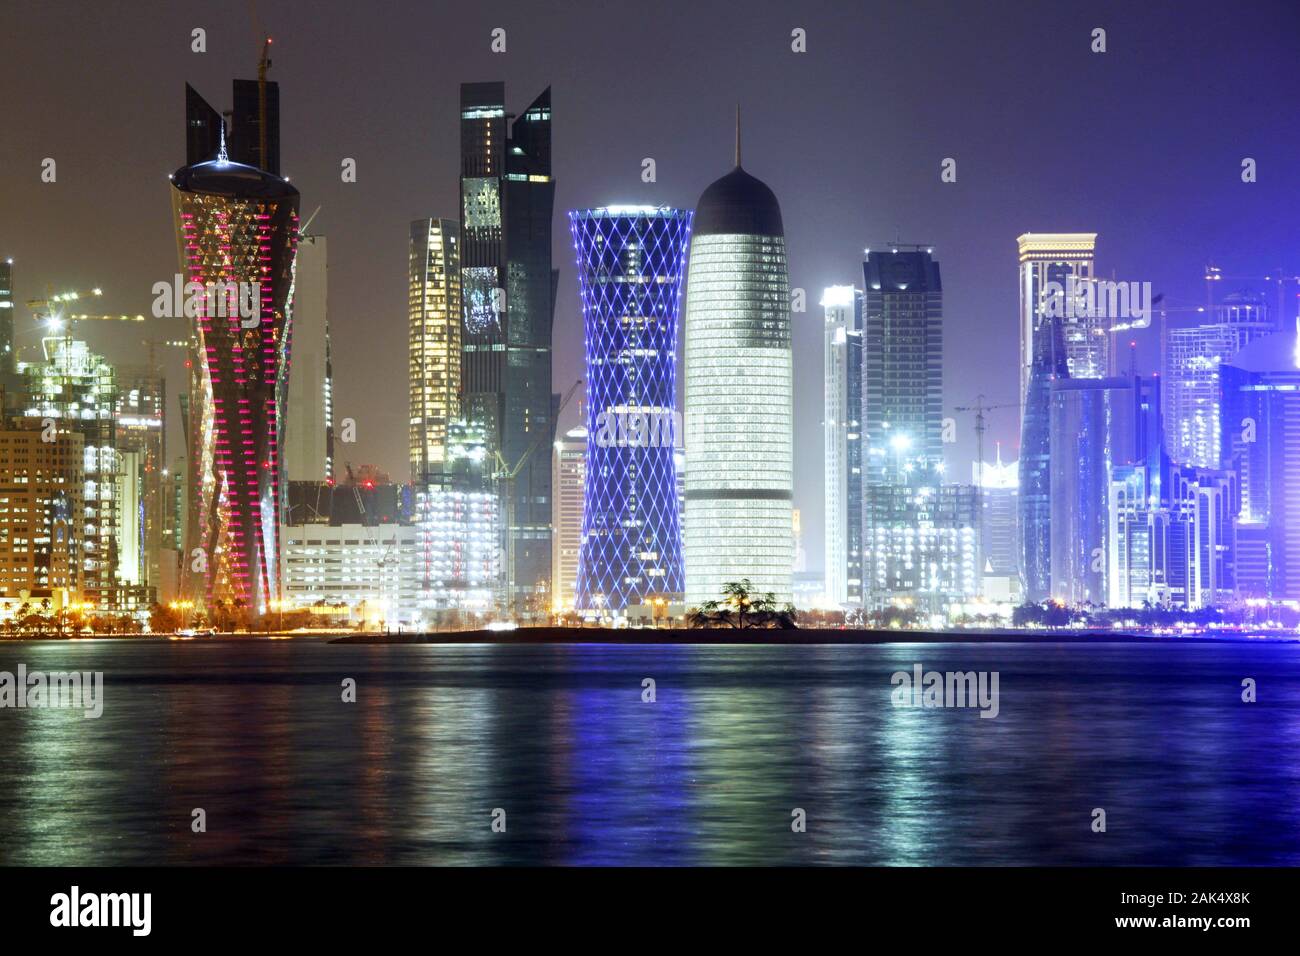 Qatar Emirat Katar: naechtliche Skyline von Doha am Persischen Golf, Dubai  | usage worldwide Stock Photo - Alamy